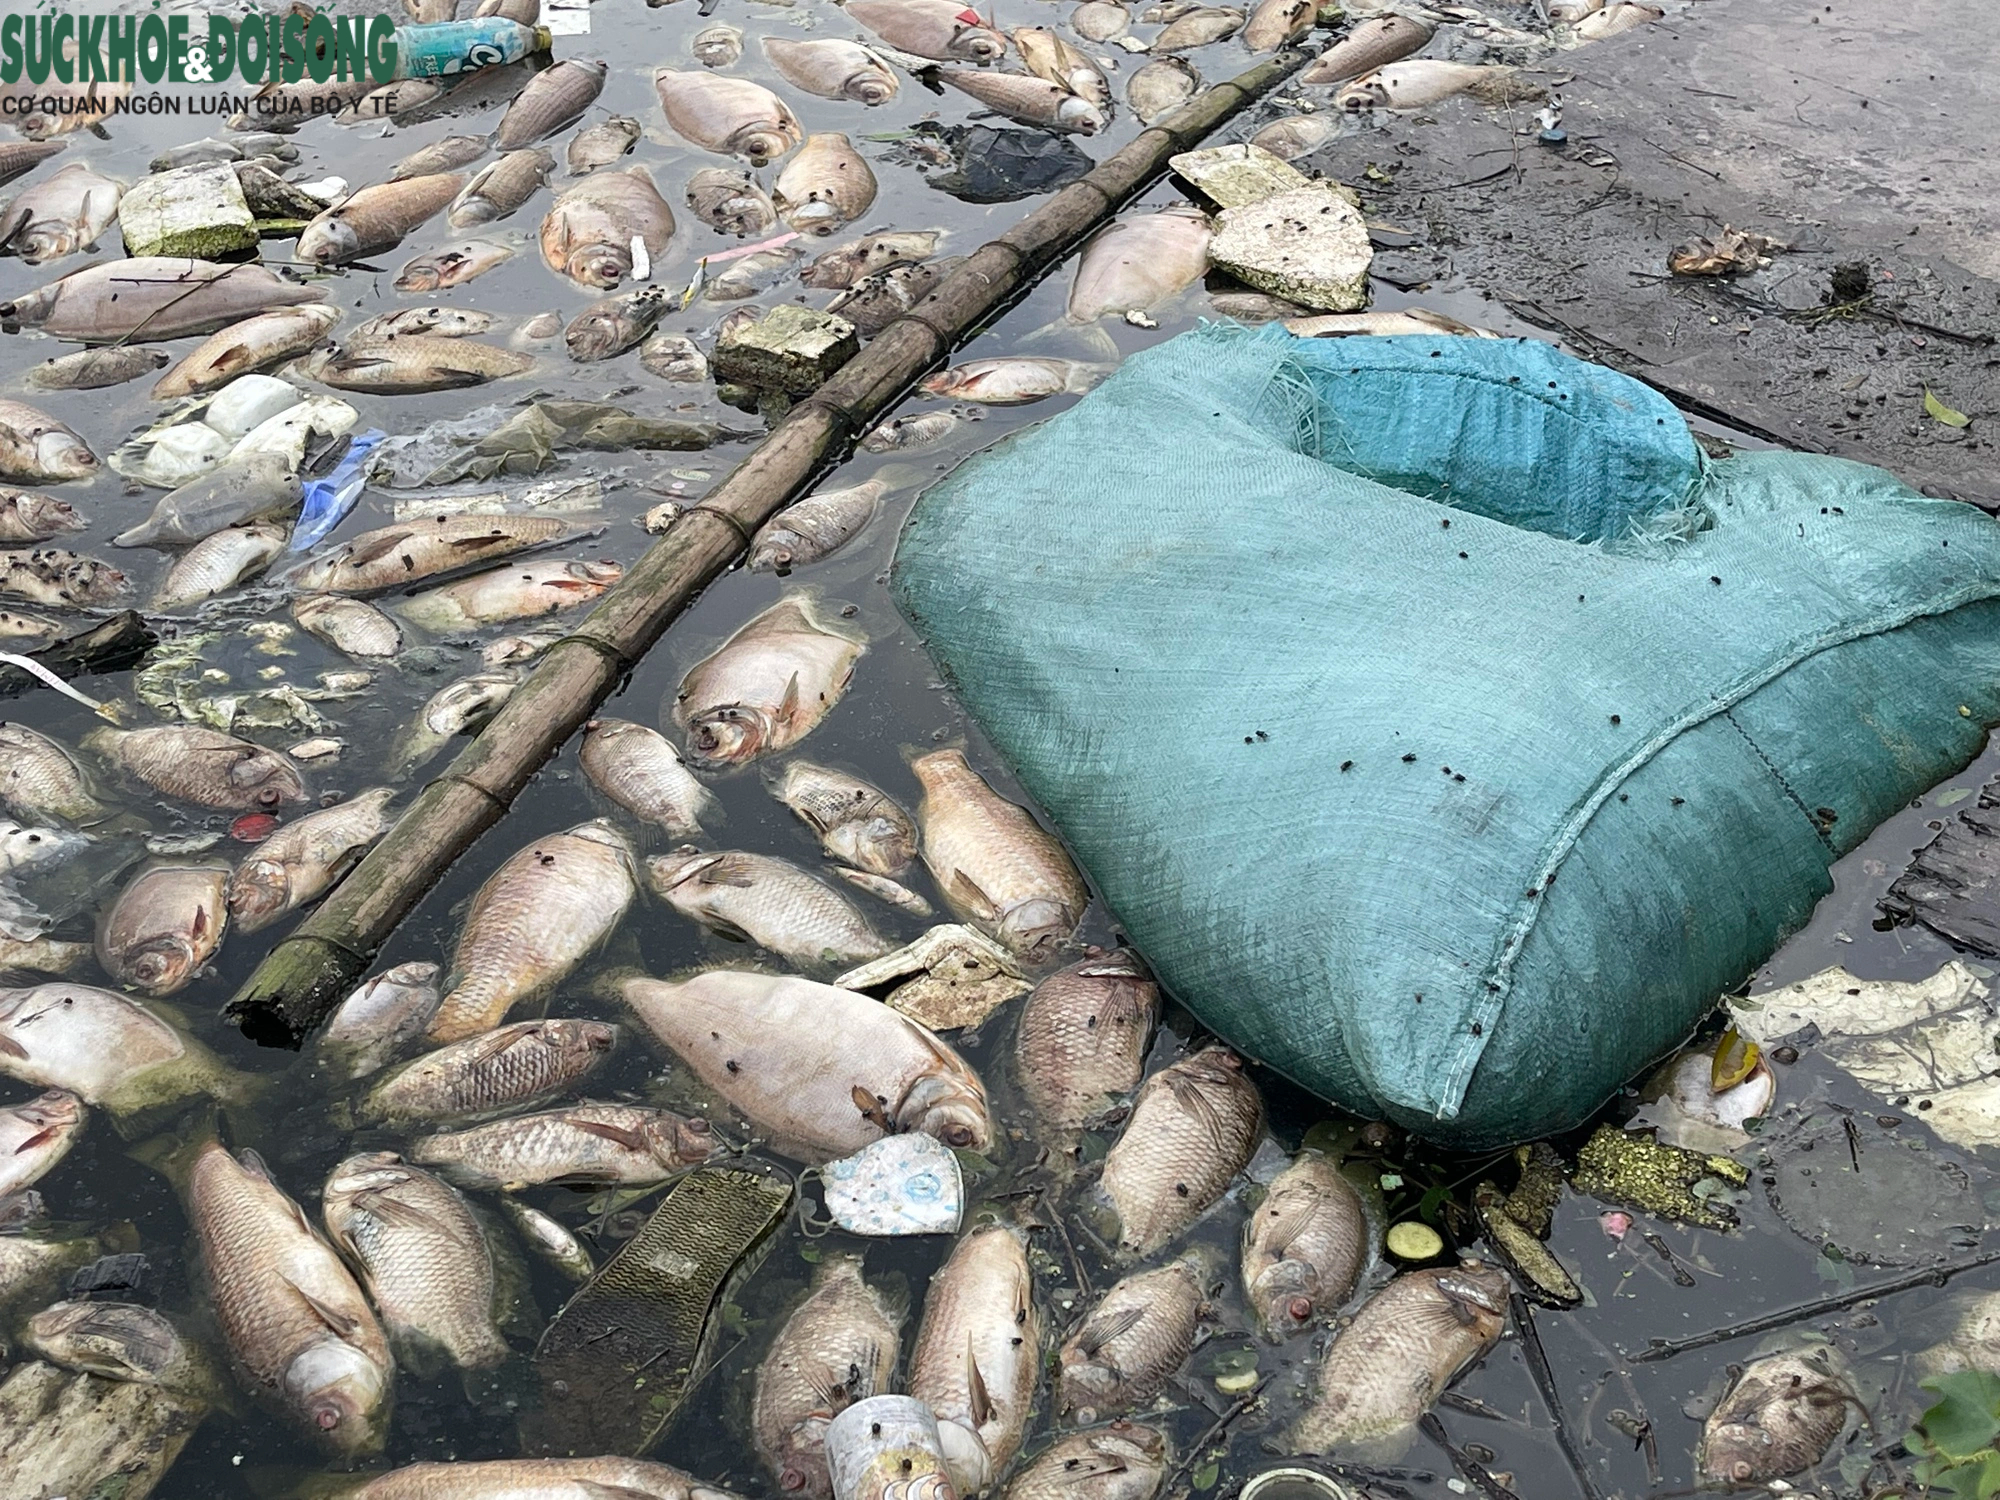 Cá chết hàng loạt, bốc mùi hôi thối tại hồ phường Hoàng Liệt- Ảnh 4.